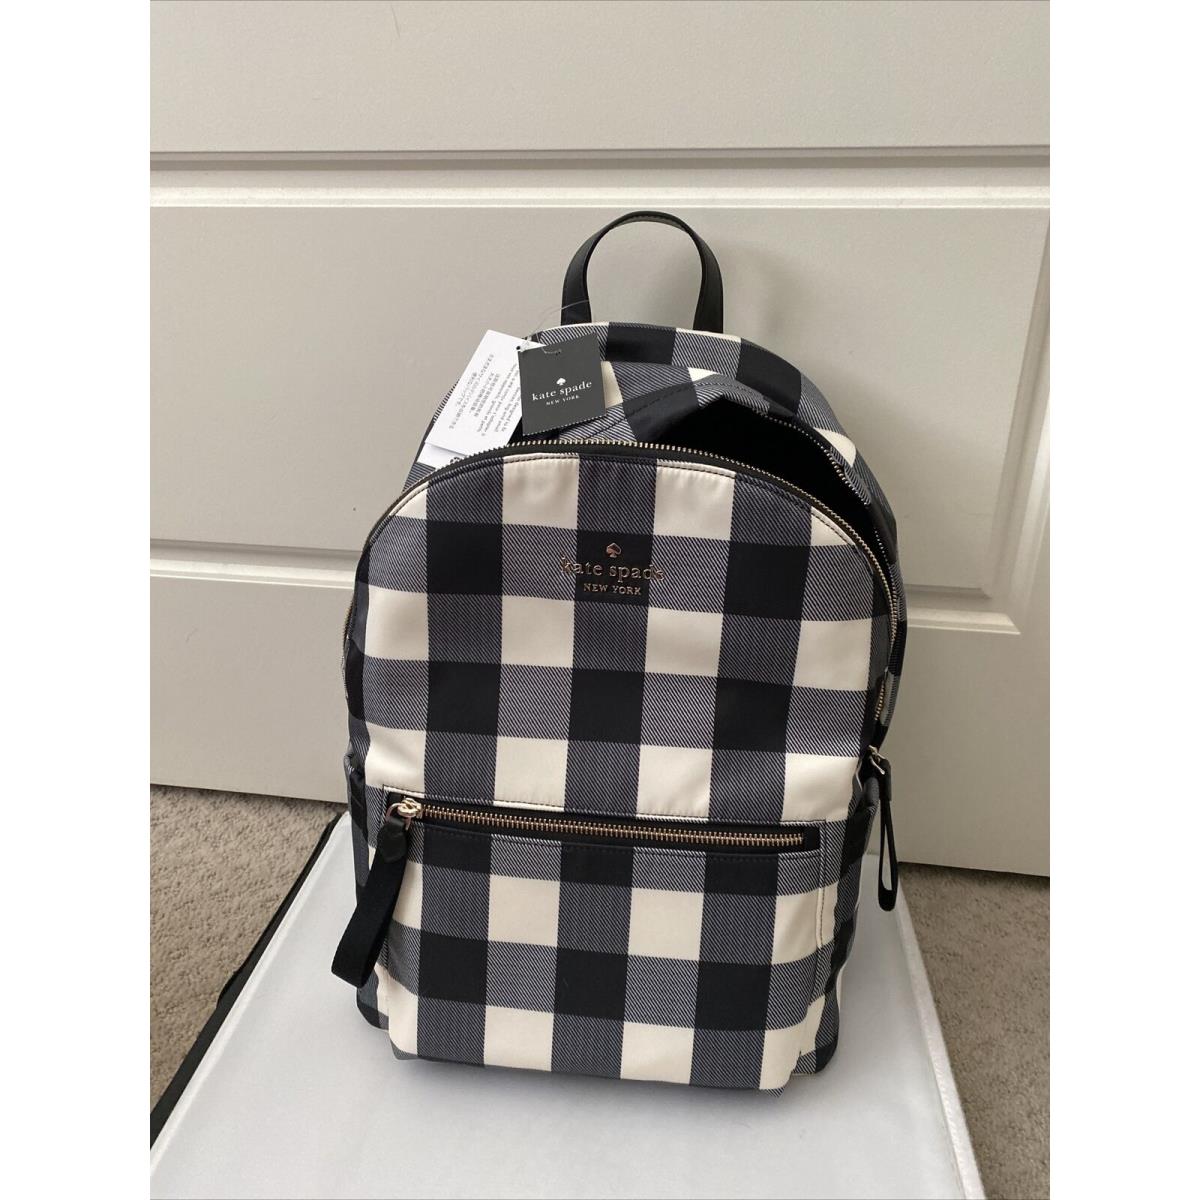 New Kate Spade Chelsea Gingham Textured Medium Backpack The Little Better Nylon